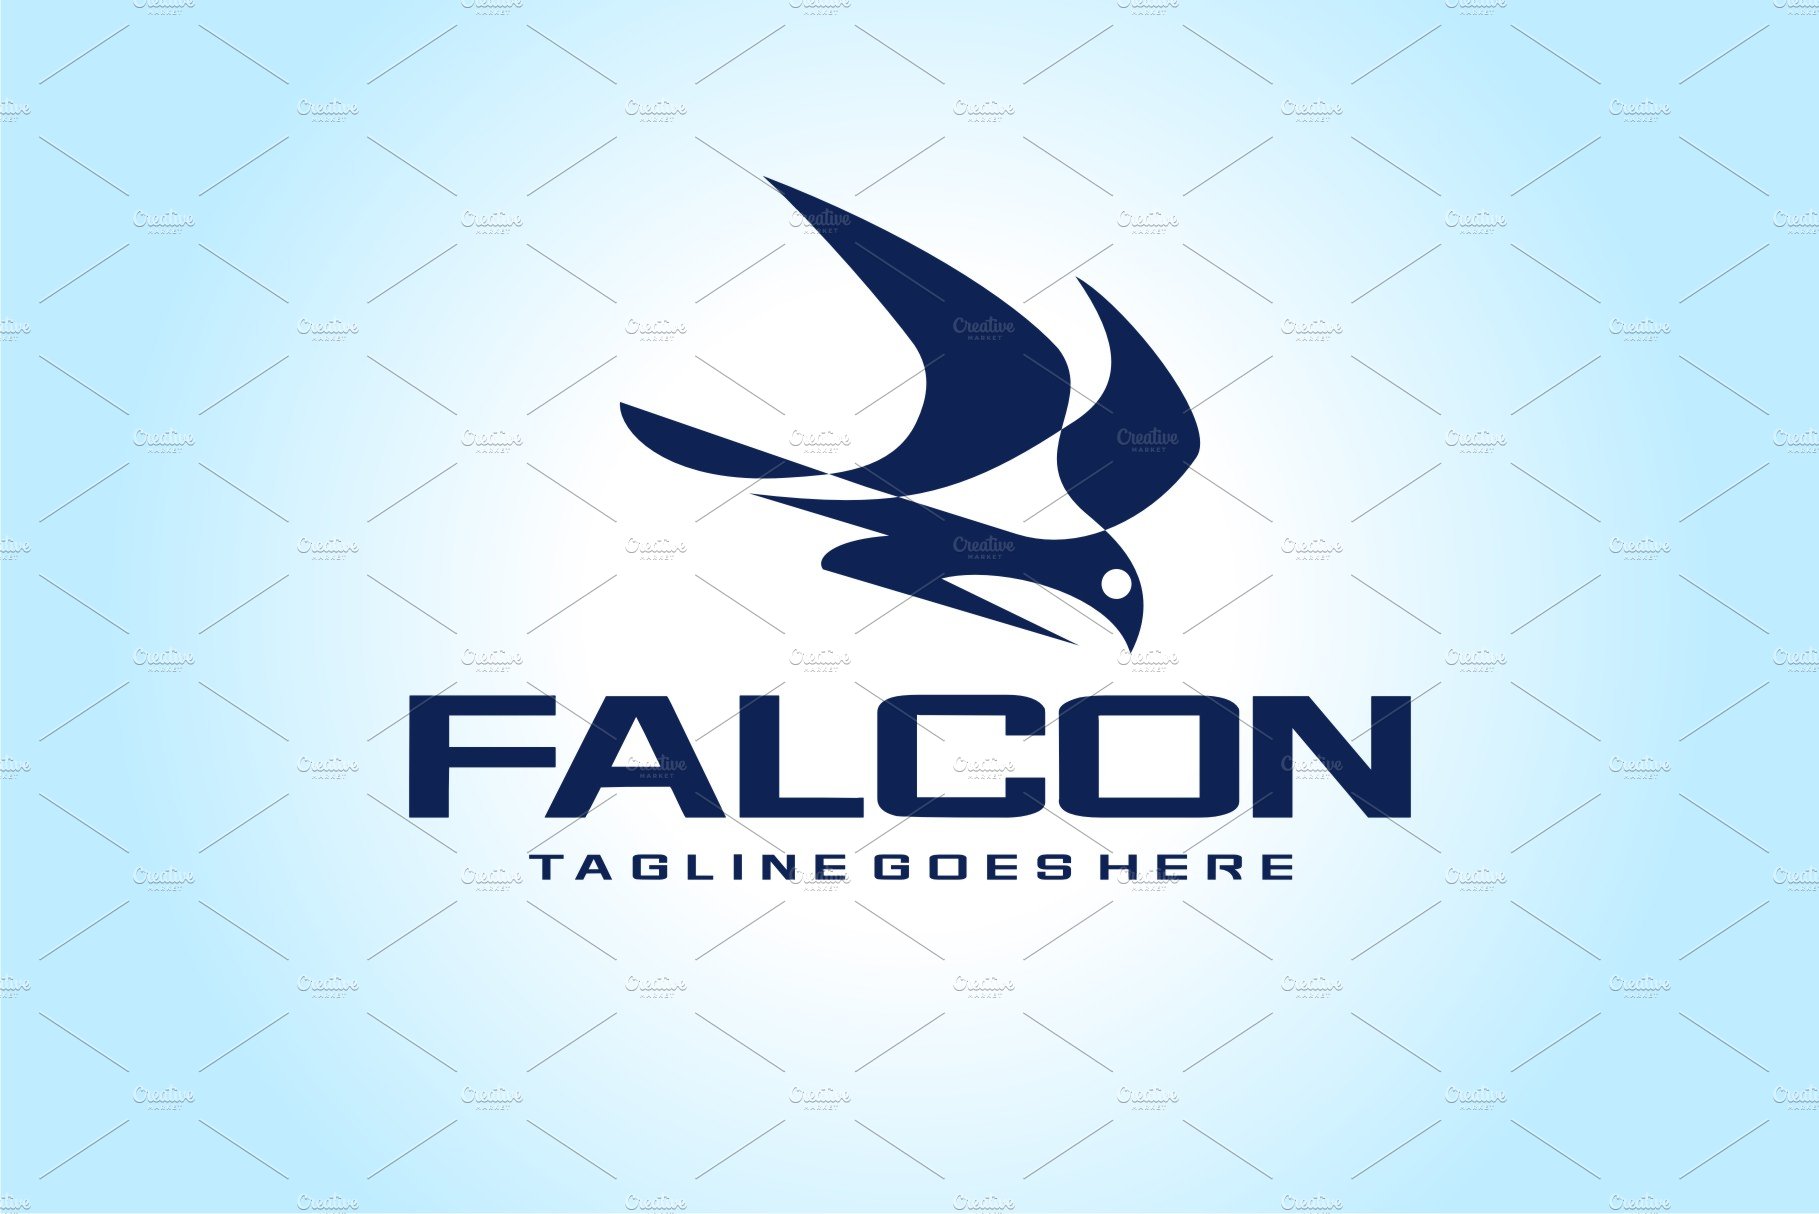 Falcon preview image.